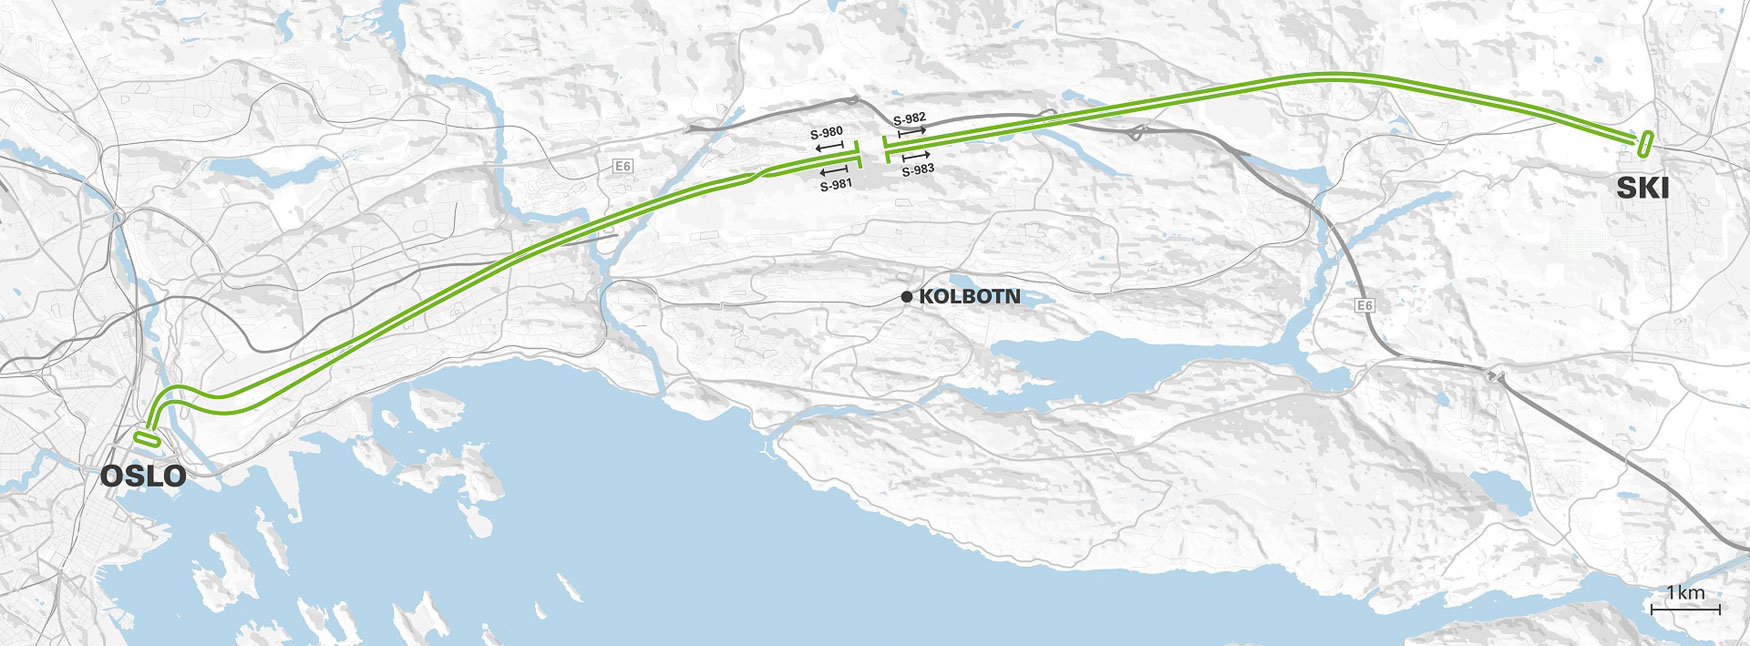 El nuevo tnel ferroviario se extender desde el municipio de Ski, en el sur de Oslo, hasta el centro de la capital noruega...